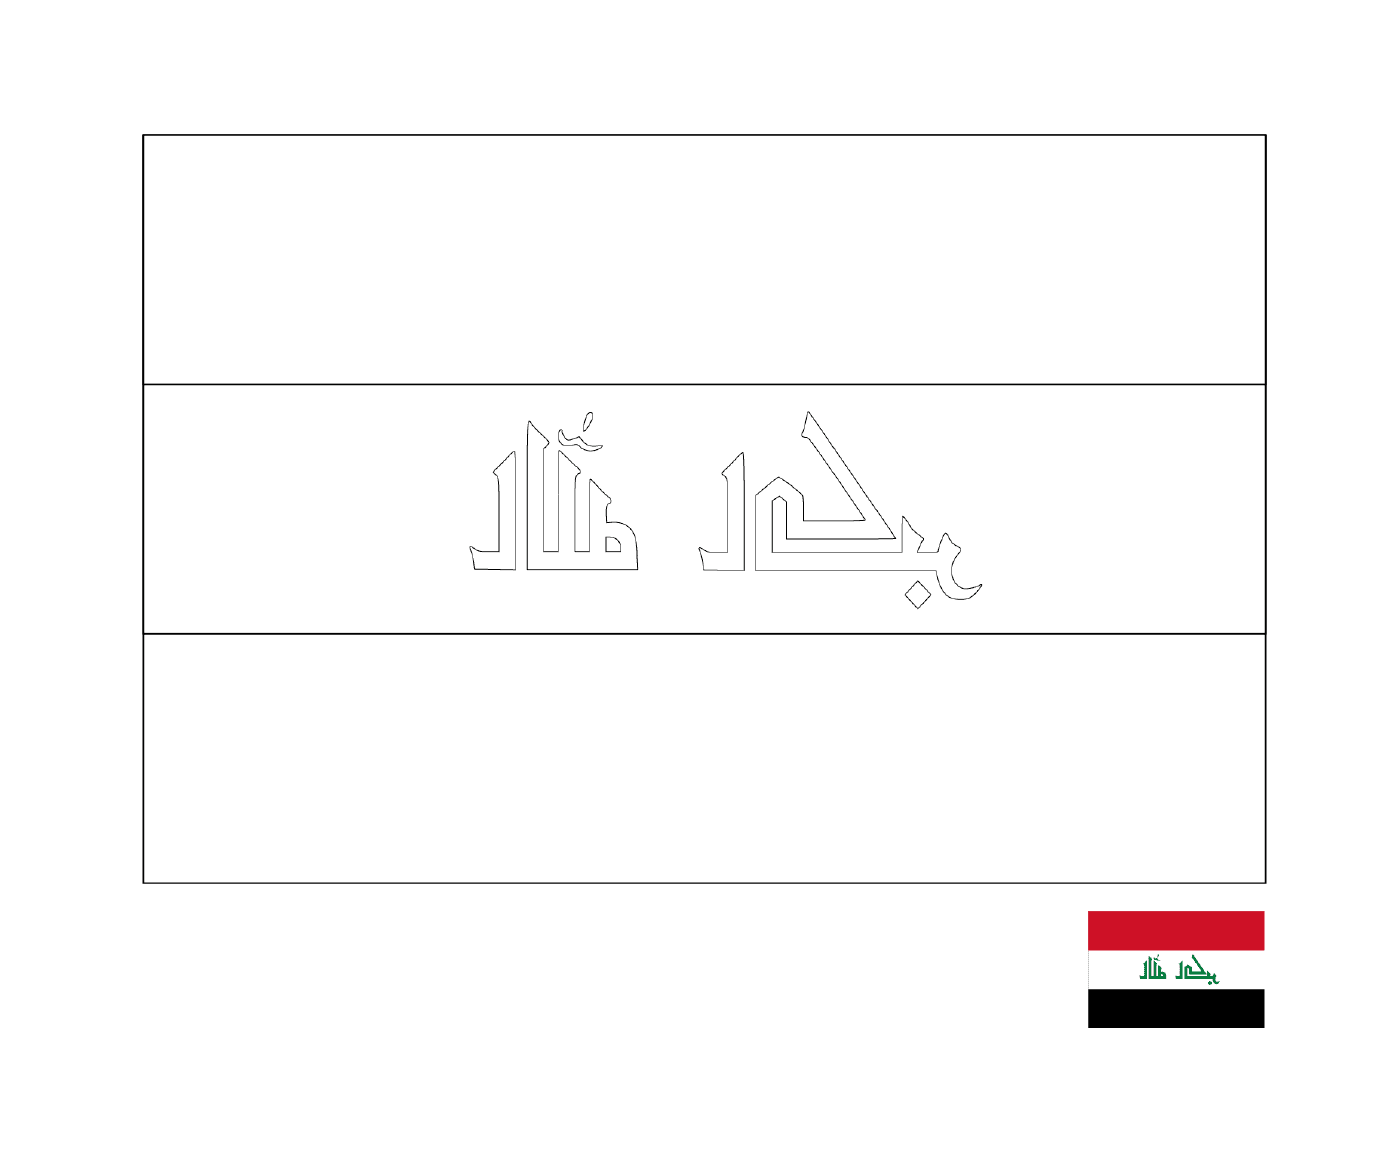  A flag of Iraq 